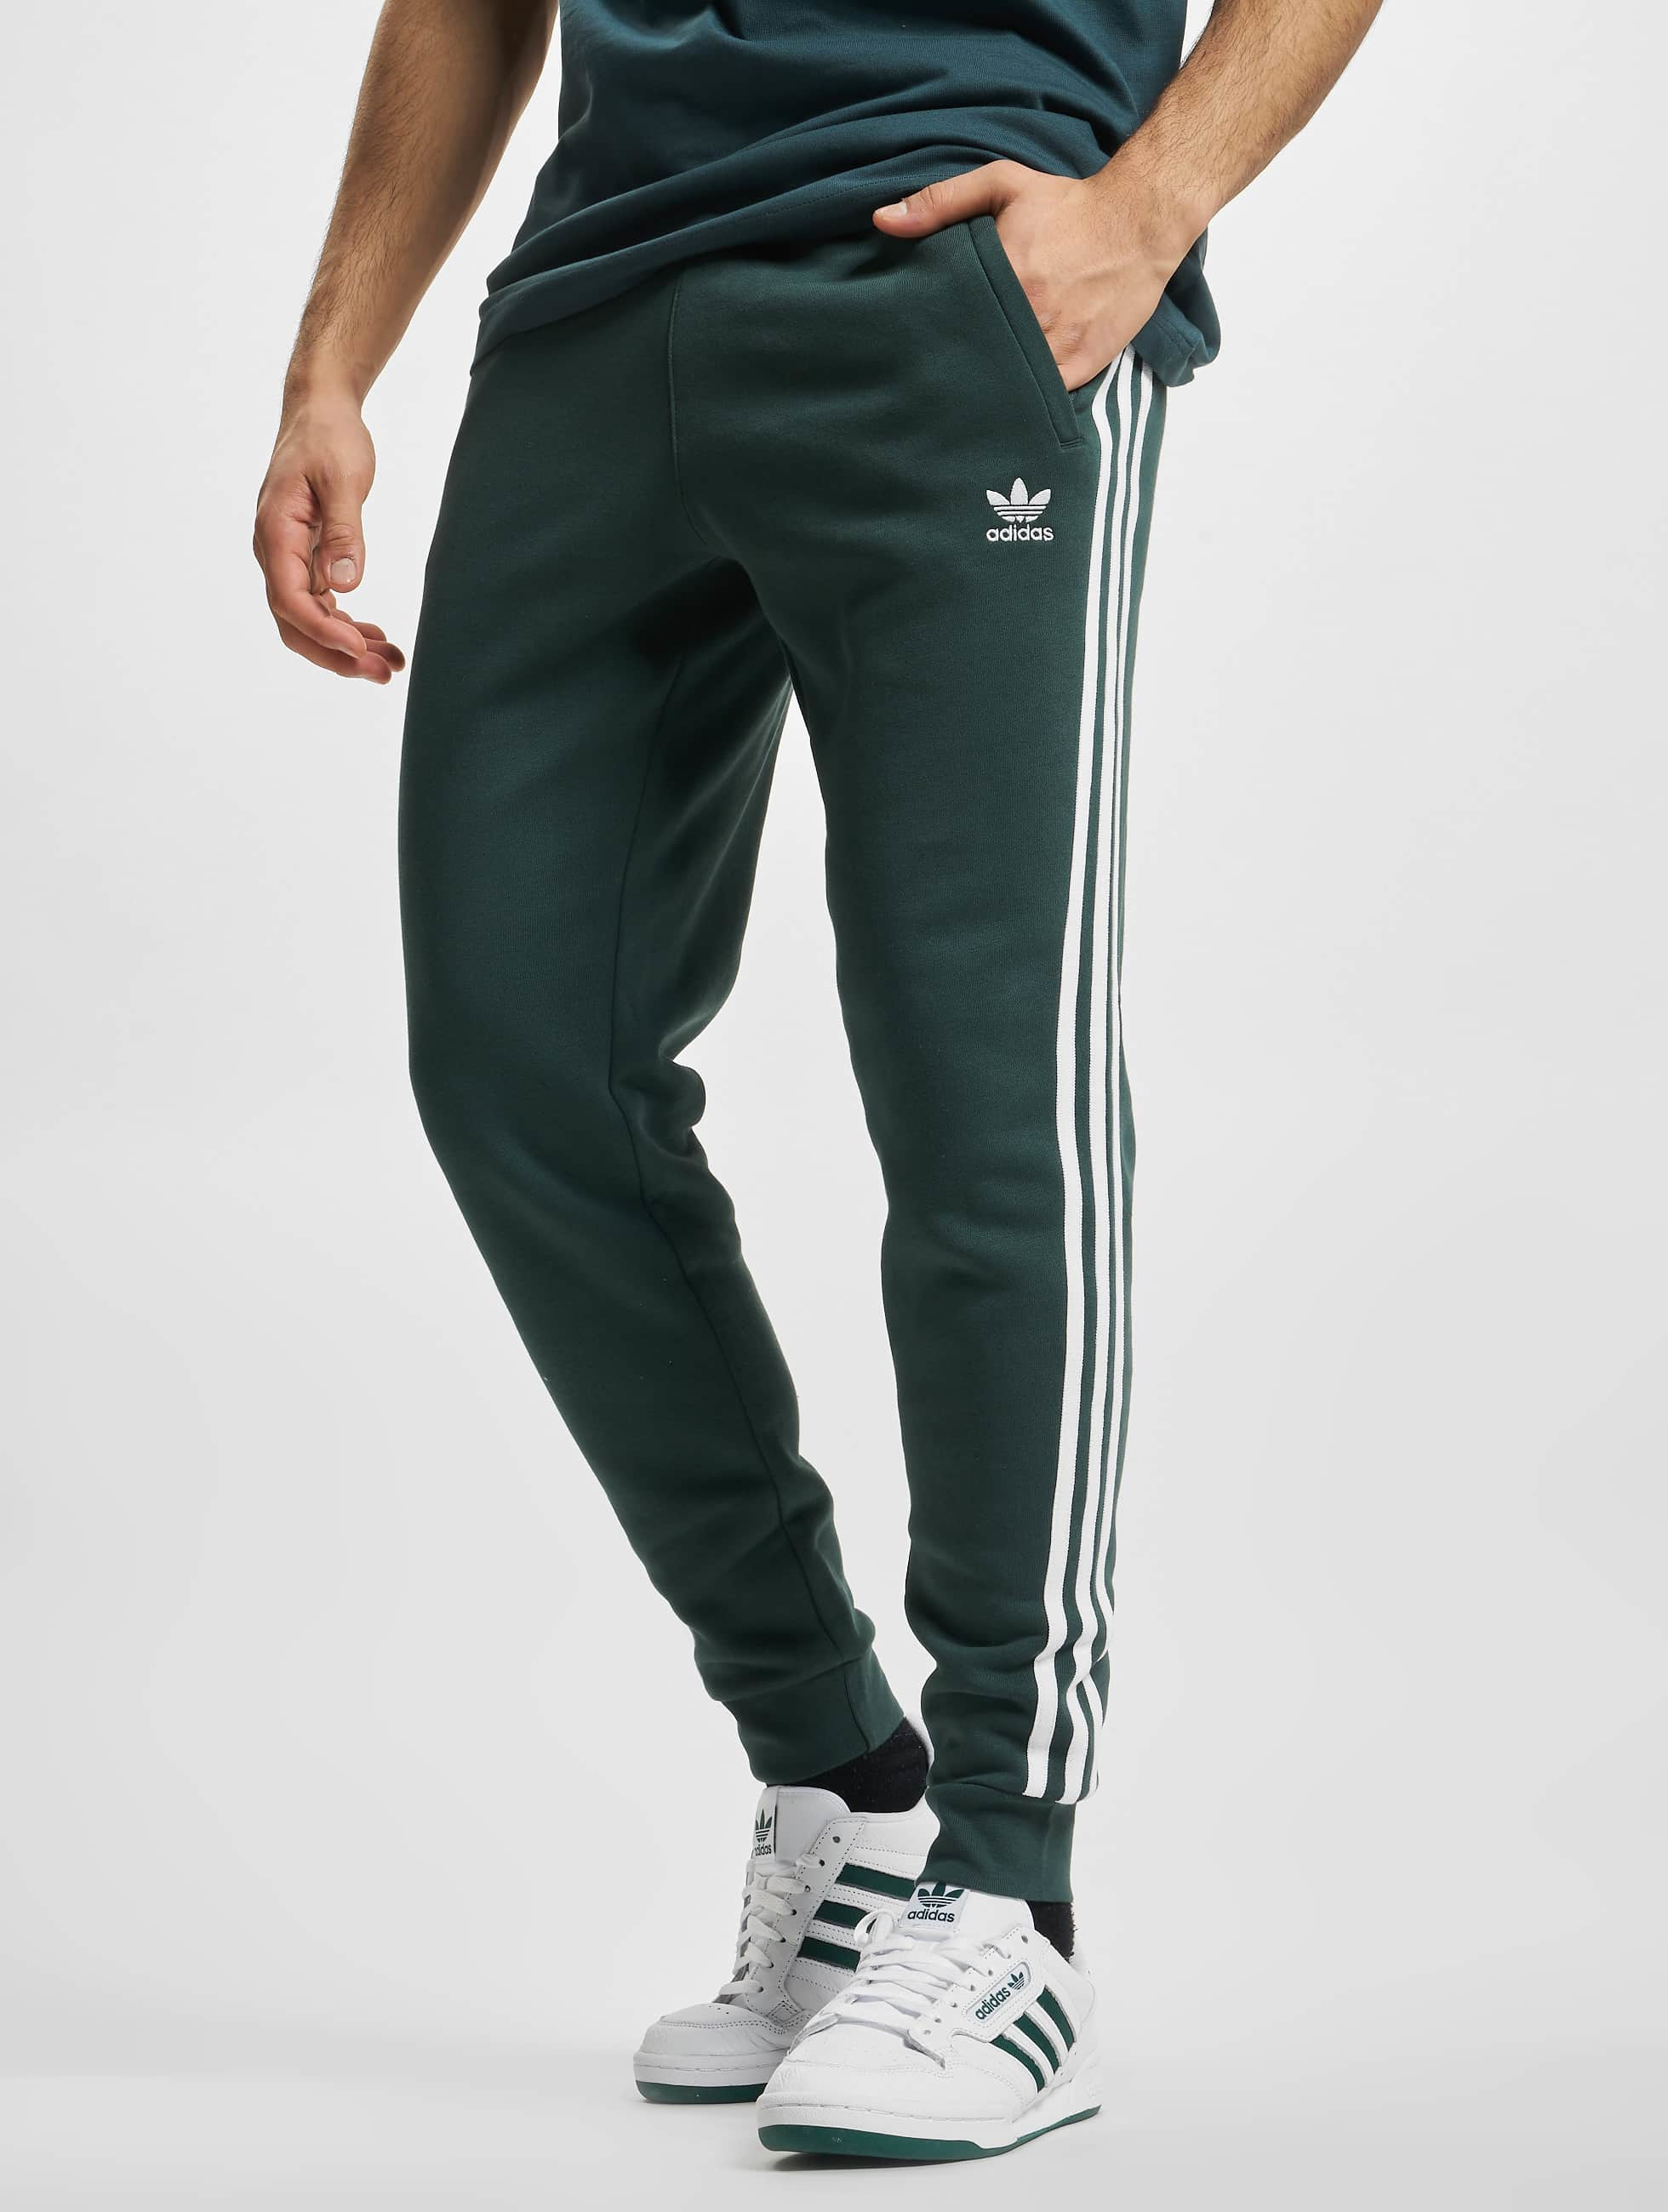 Al frente asignación eje adidas Originals Pantalón / Pantalón deportivo Originals 3-Stripes en verde  929615